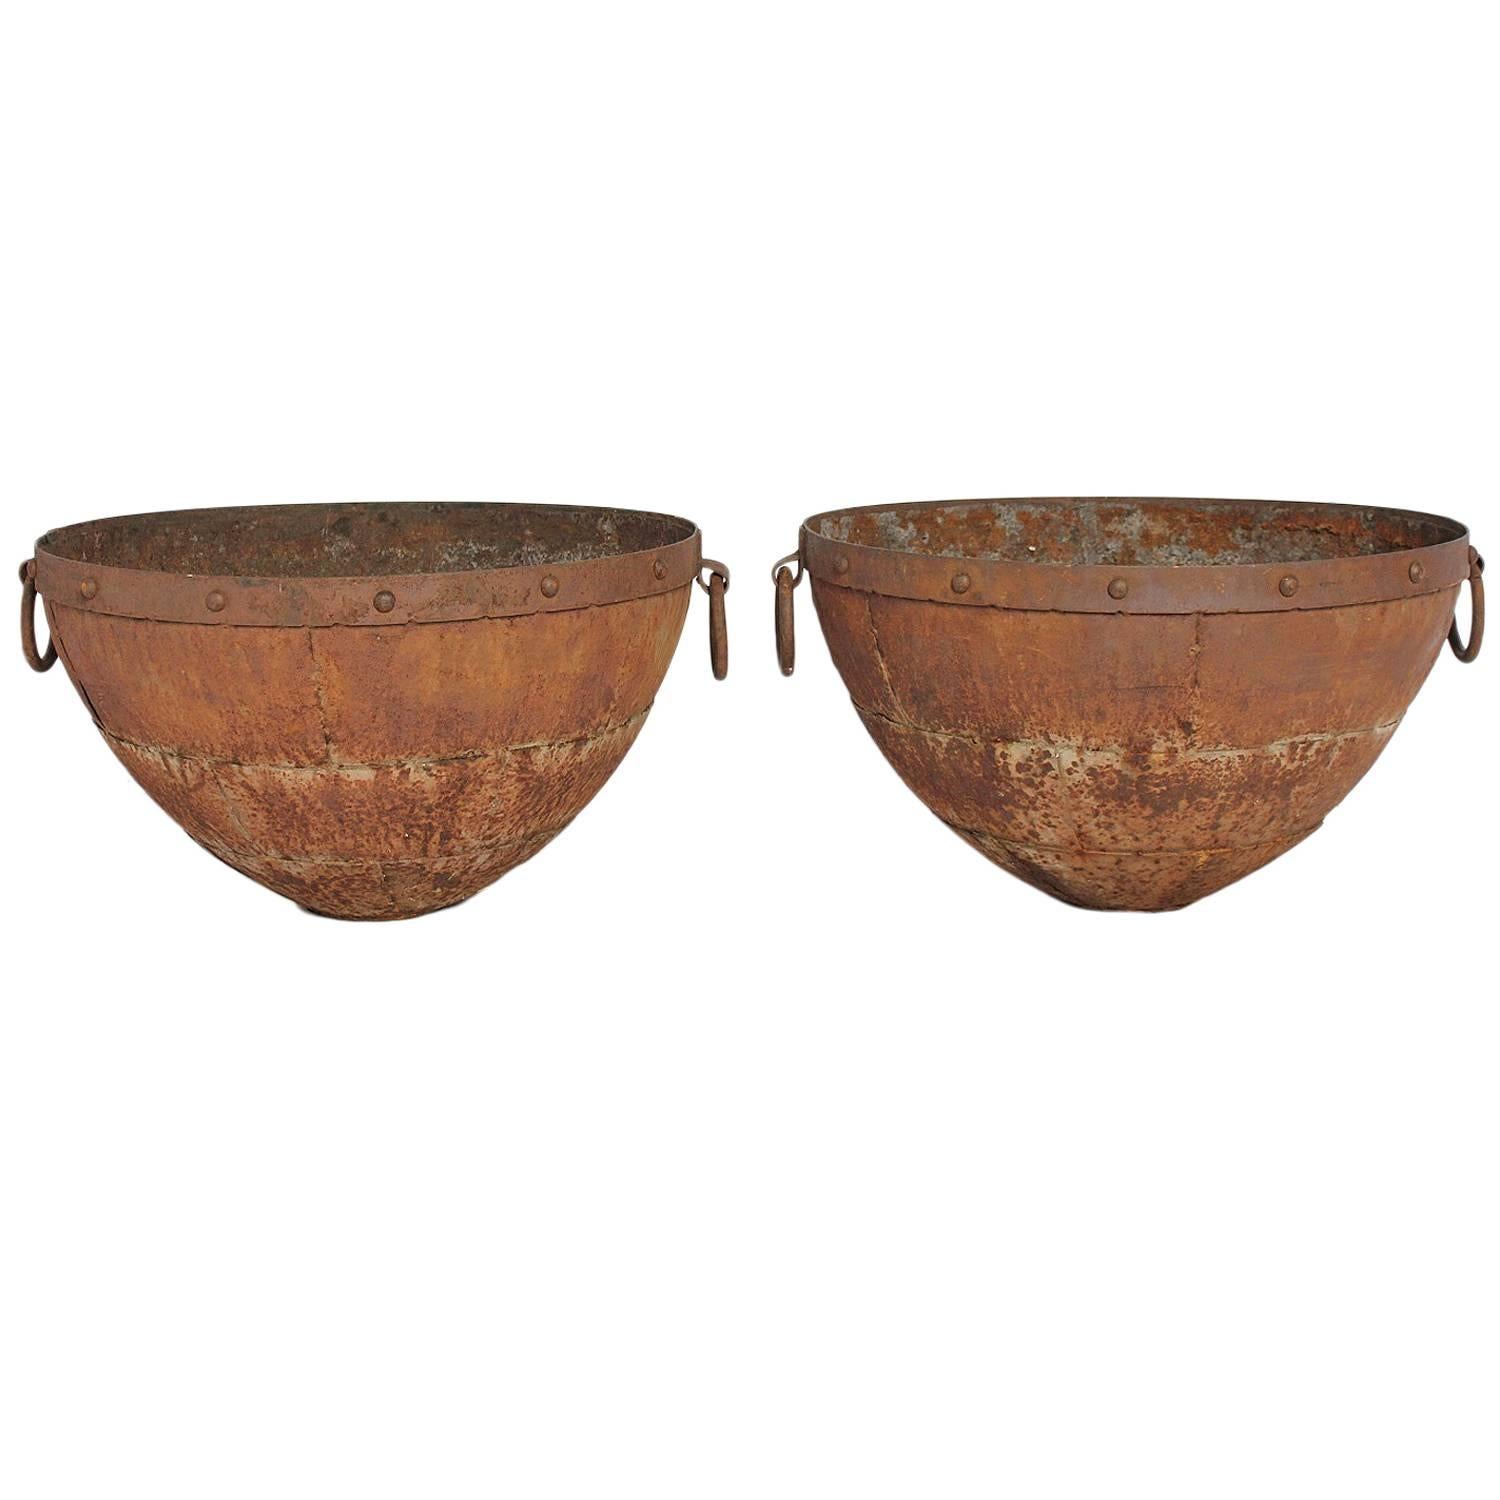 Large Antique Iron Bowls For Sale